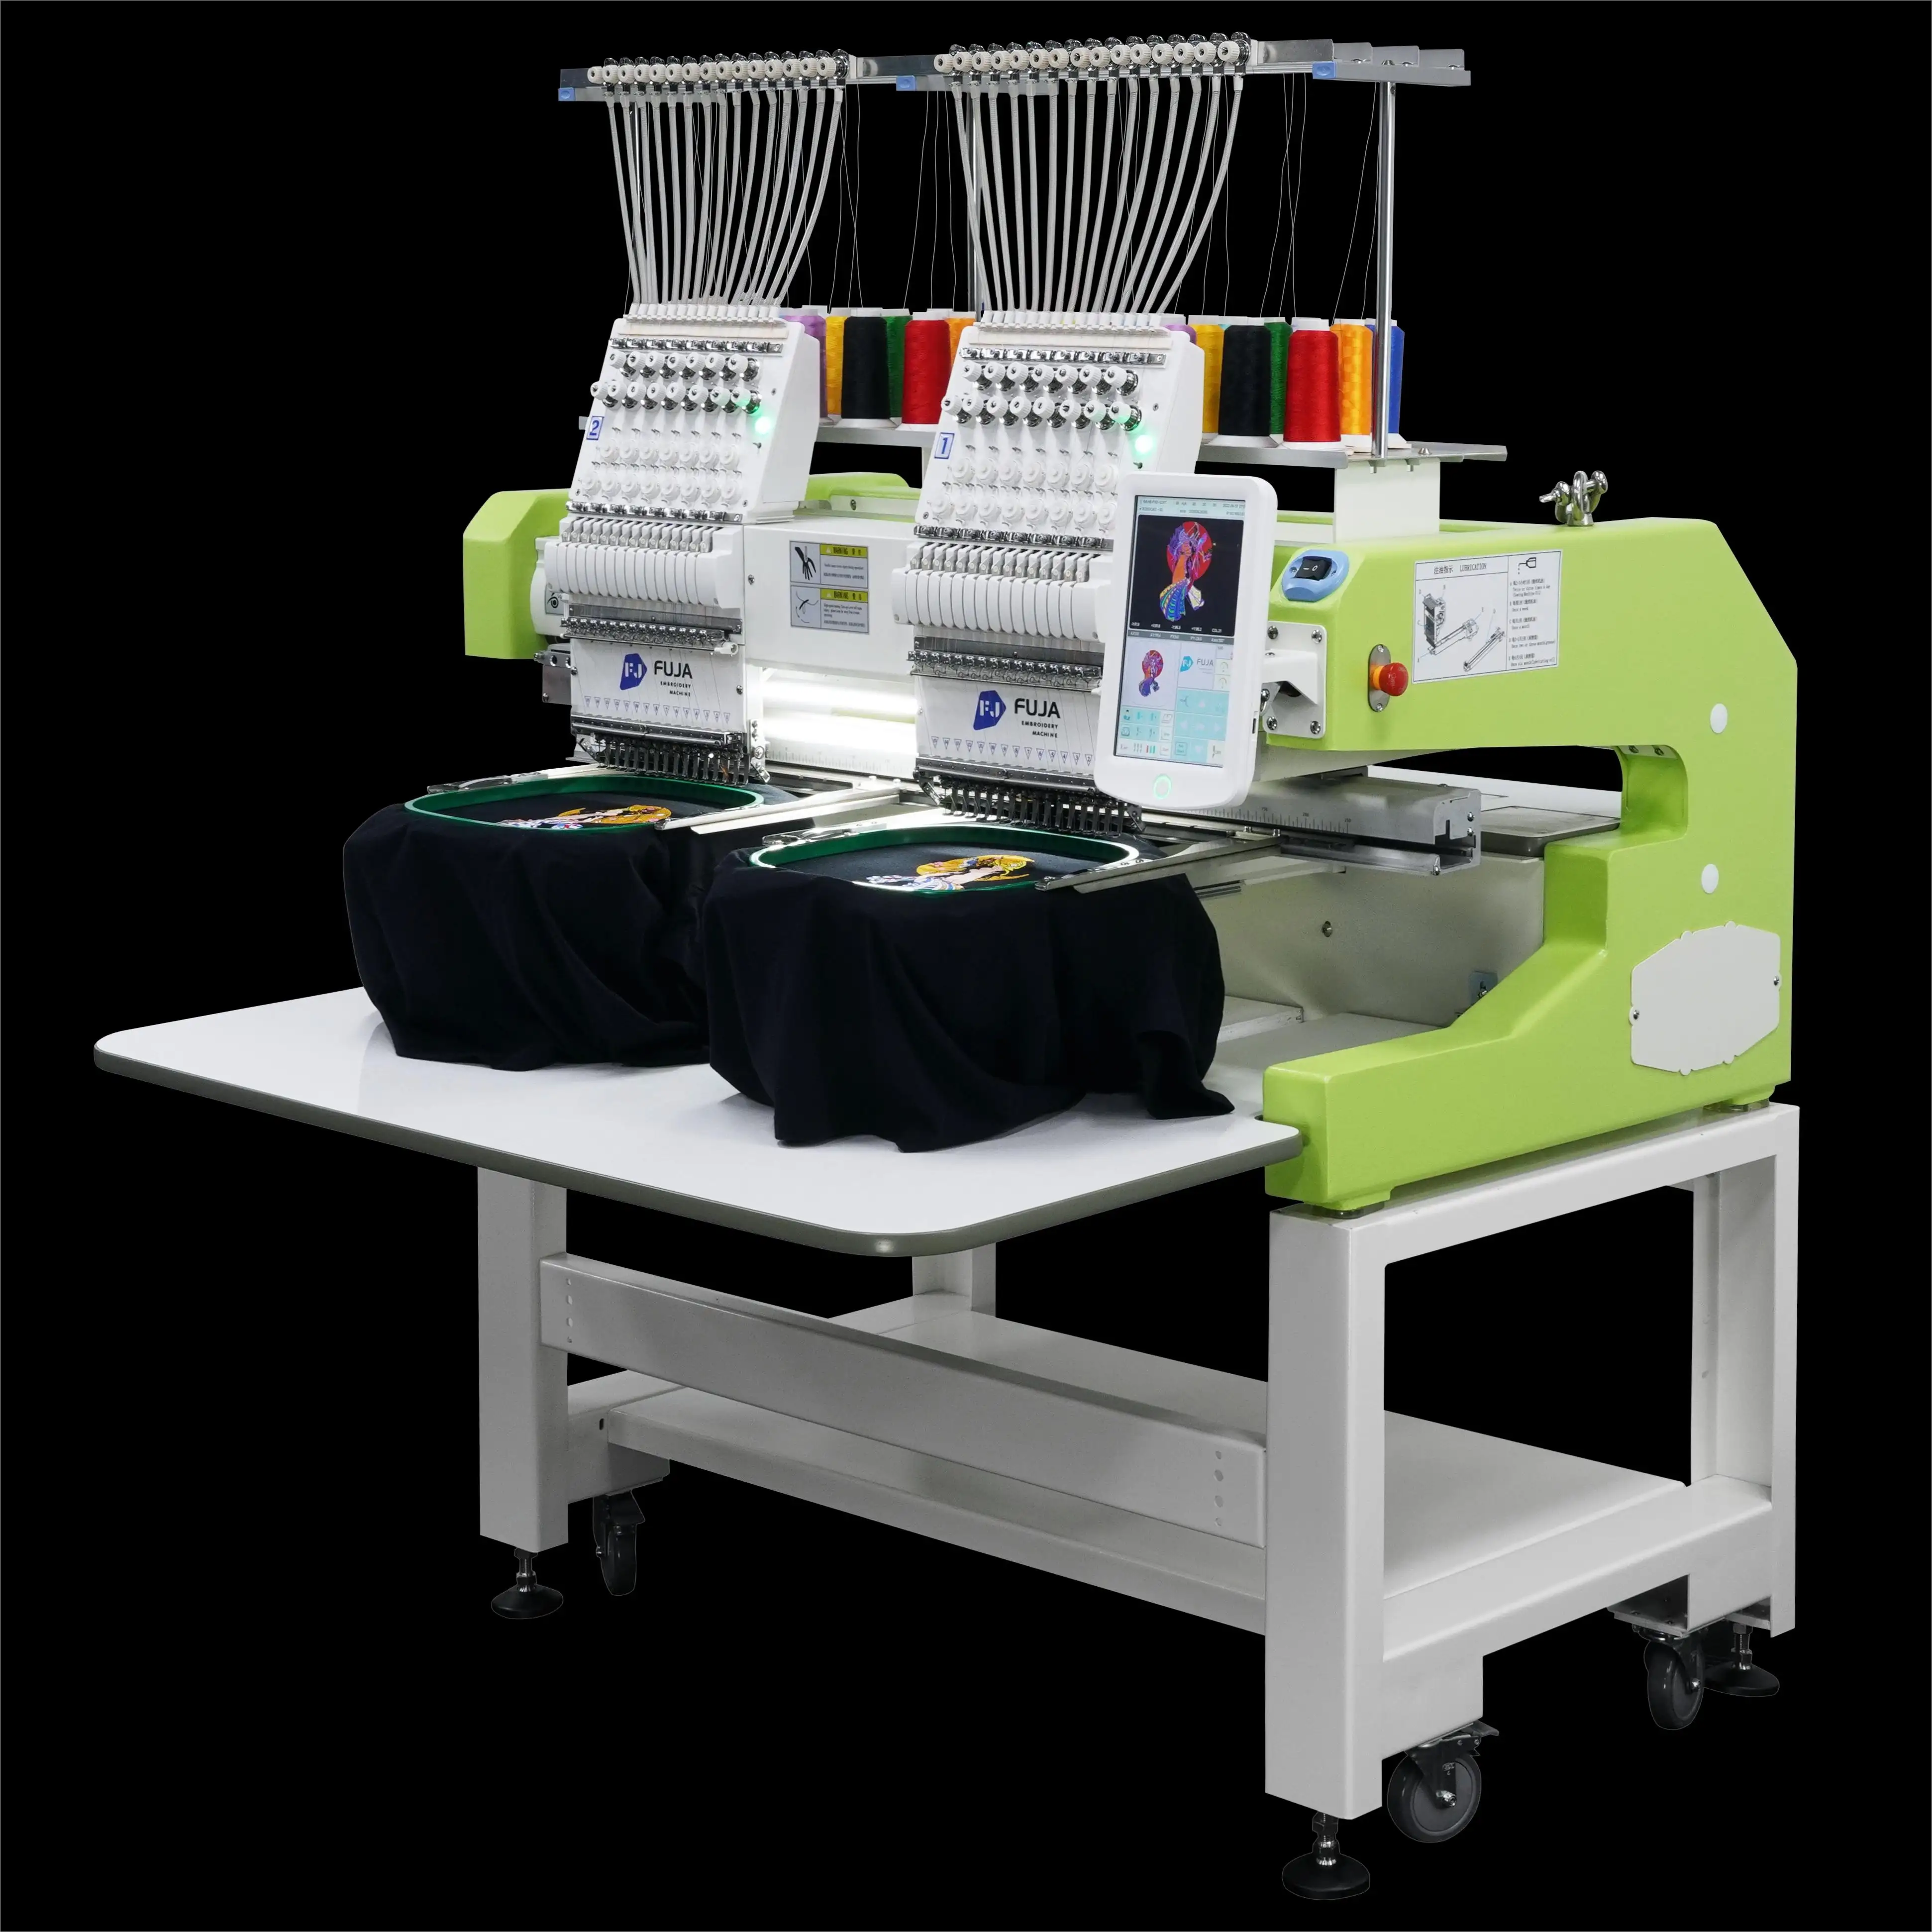 Hochwertige 2-kopf-multinadel-computergesteuerte automatische fadenkappe t-shirt-stickmaschine für t-shirt logo mützenstickerei